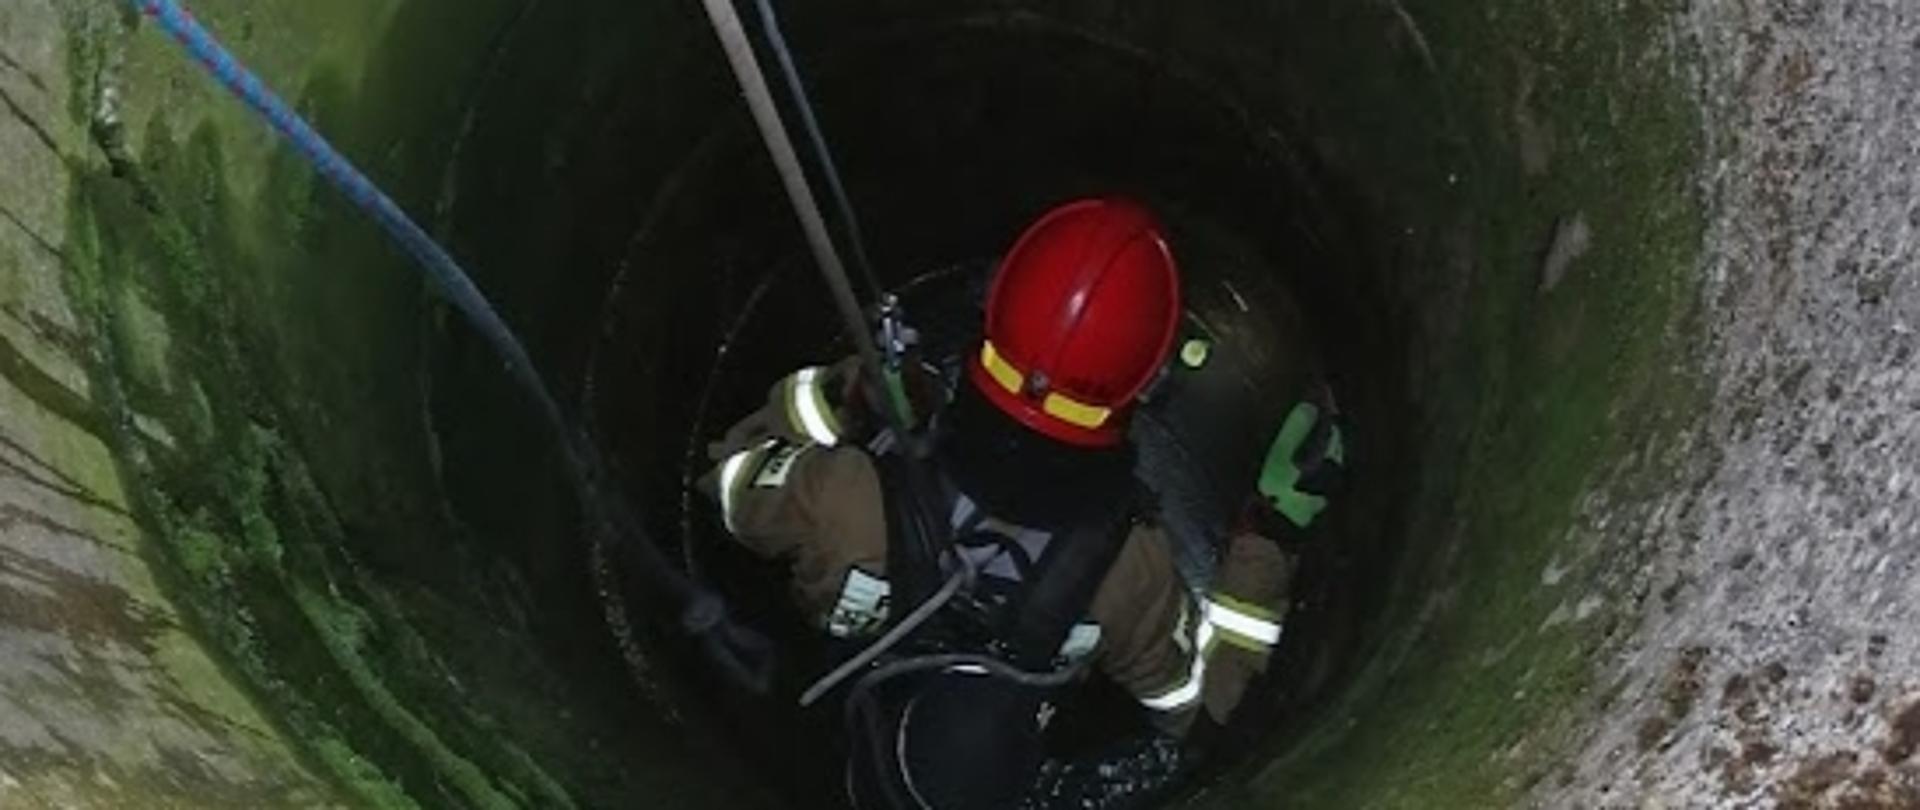 Strażak wyposażony w sprzęt ochrony układu oddechowego, w szelkach alpinistycznych, podczepiony do lin, podczas zejścia do wnętrza studni.